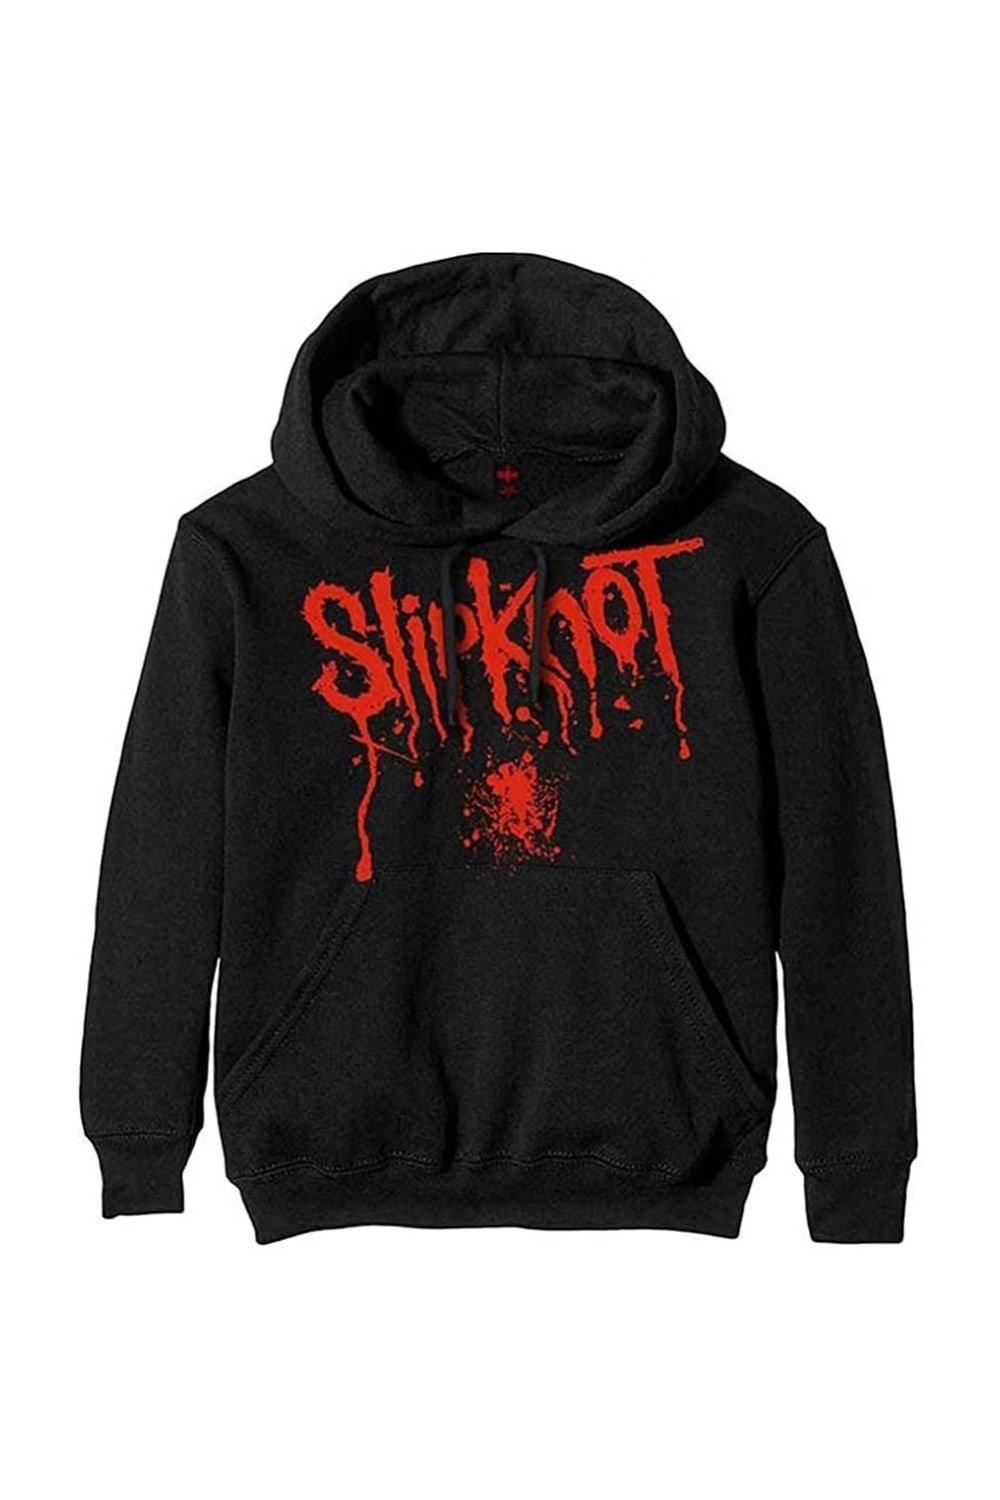 Пуловер с капюшоном и брызгами крови Slipknot, черный slipknot виниловая пластинка slipknot end for now neon yellow